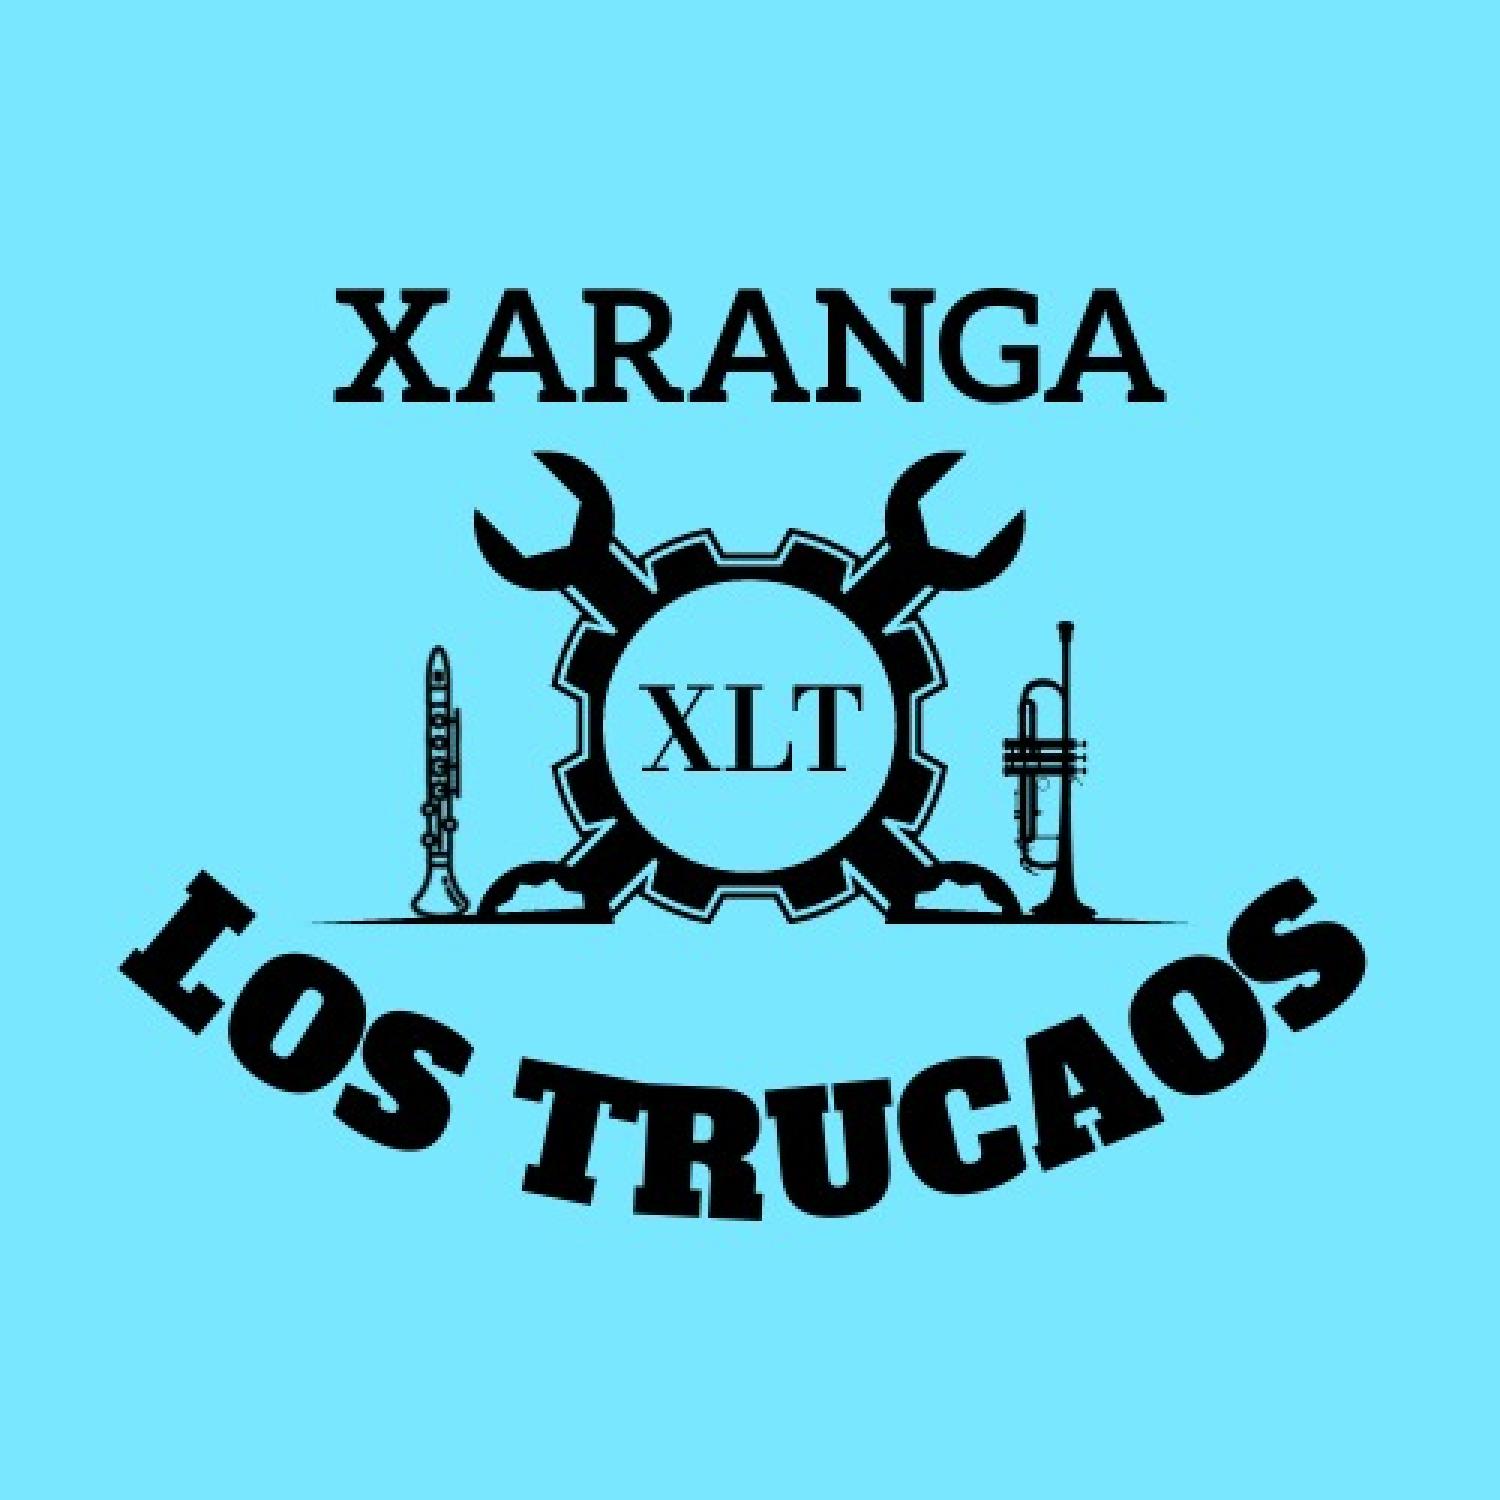 Xaranga Los Trucaos CHARANGA, XARANGA, STREET BAND